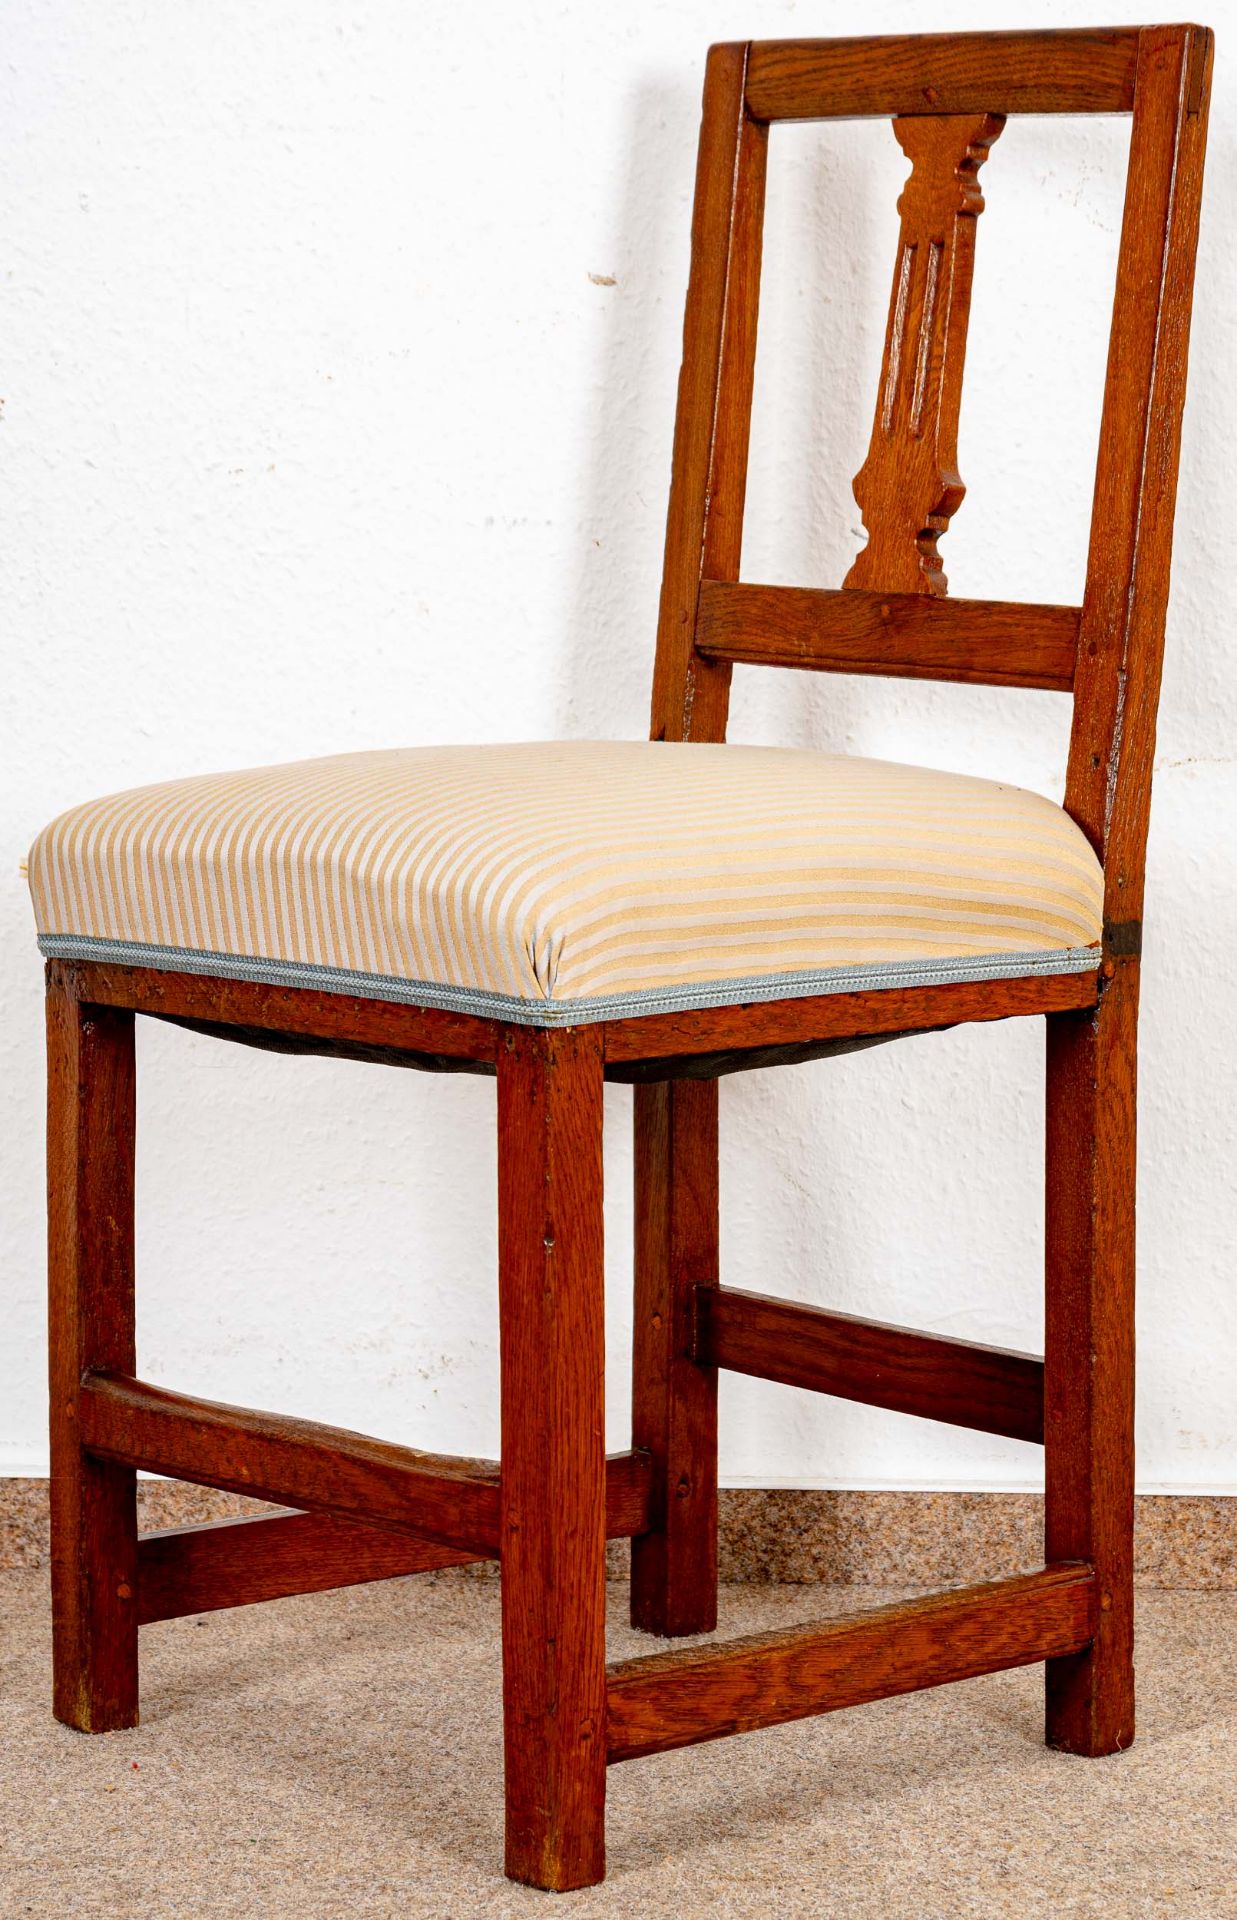 Antiker Stuhl, Spätklassizismus um 1800/20, Eiche massiv, sichtbare Holzdübel; ältere Restauration,